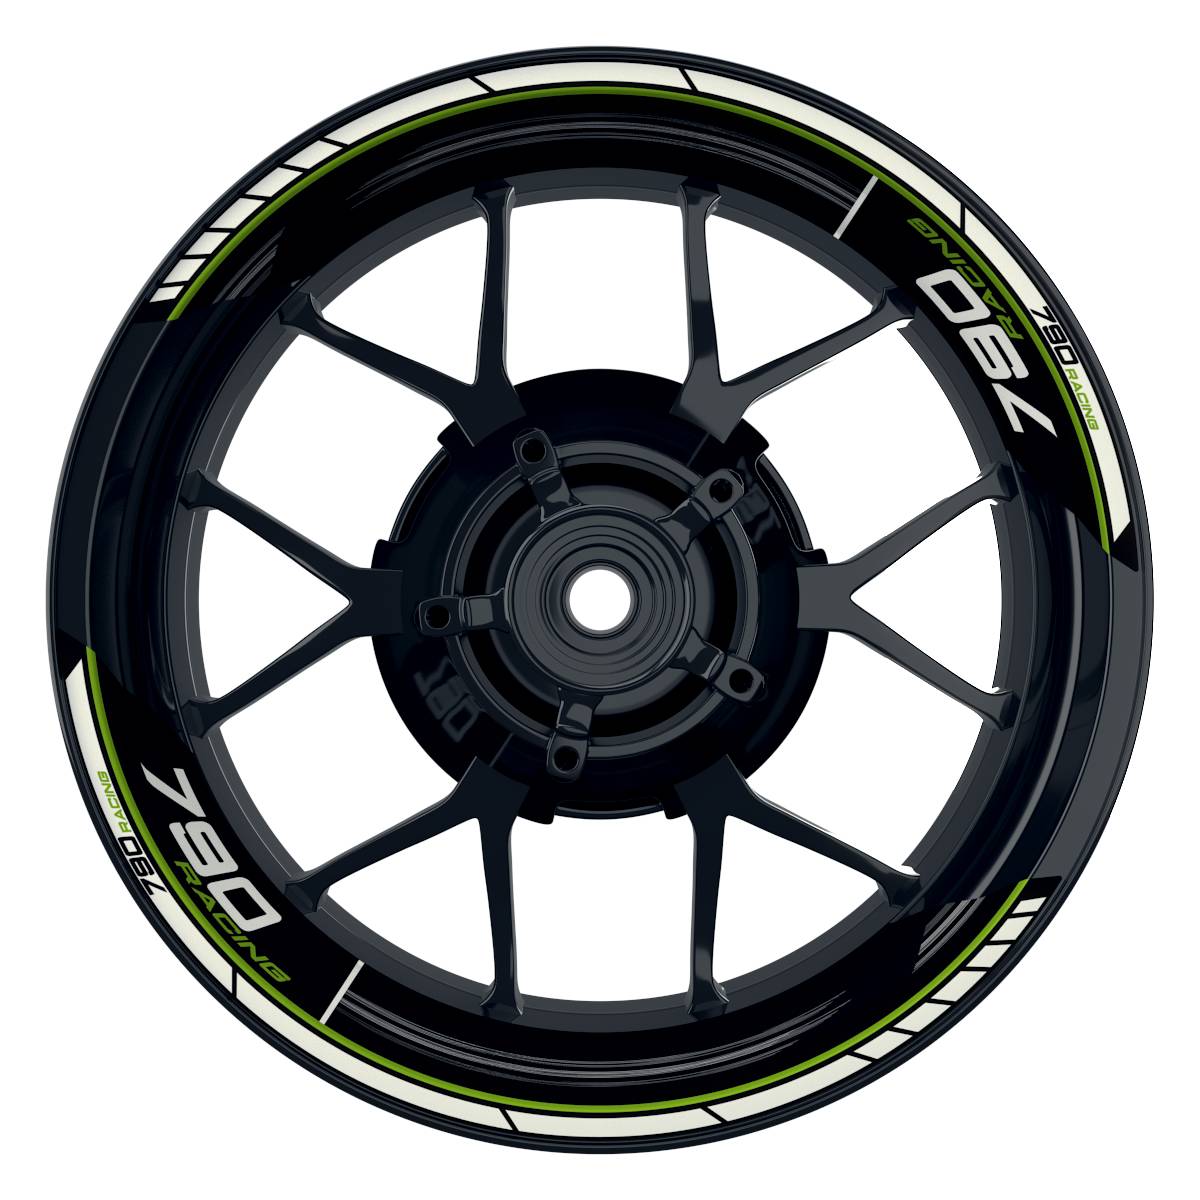 KTM Racing 790 Scratched schwarz gruen Frontansicht